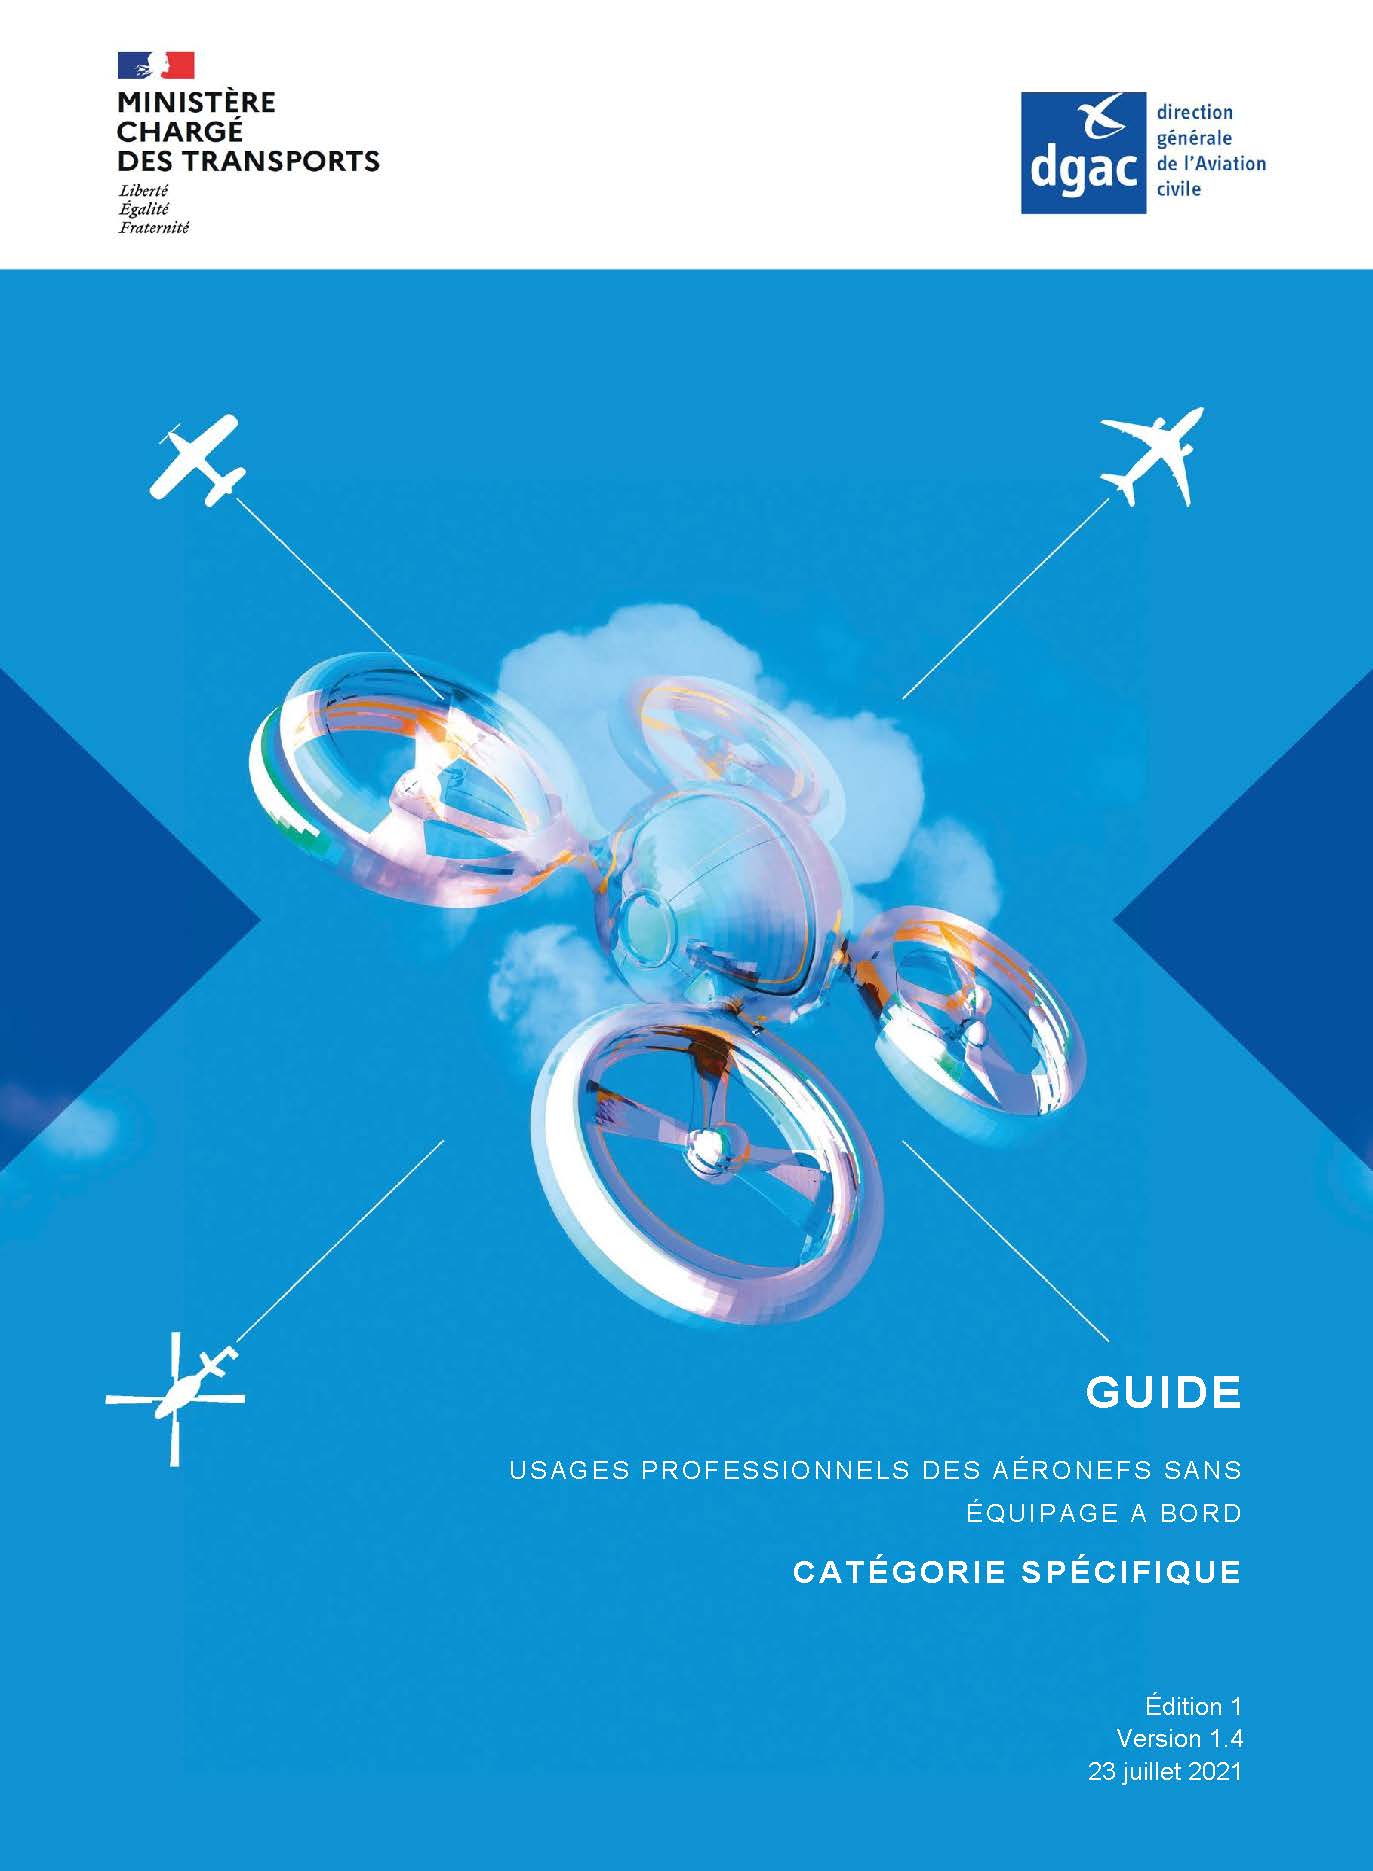 Drone - guide Catégorie spécifique de la DGAC